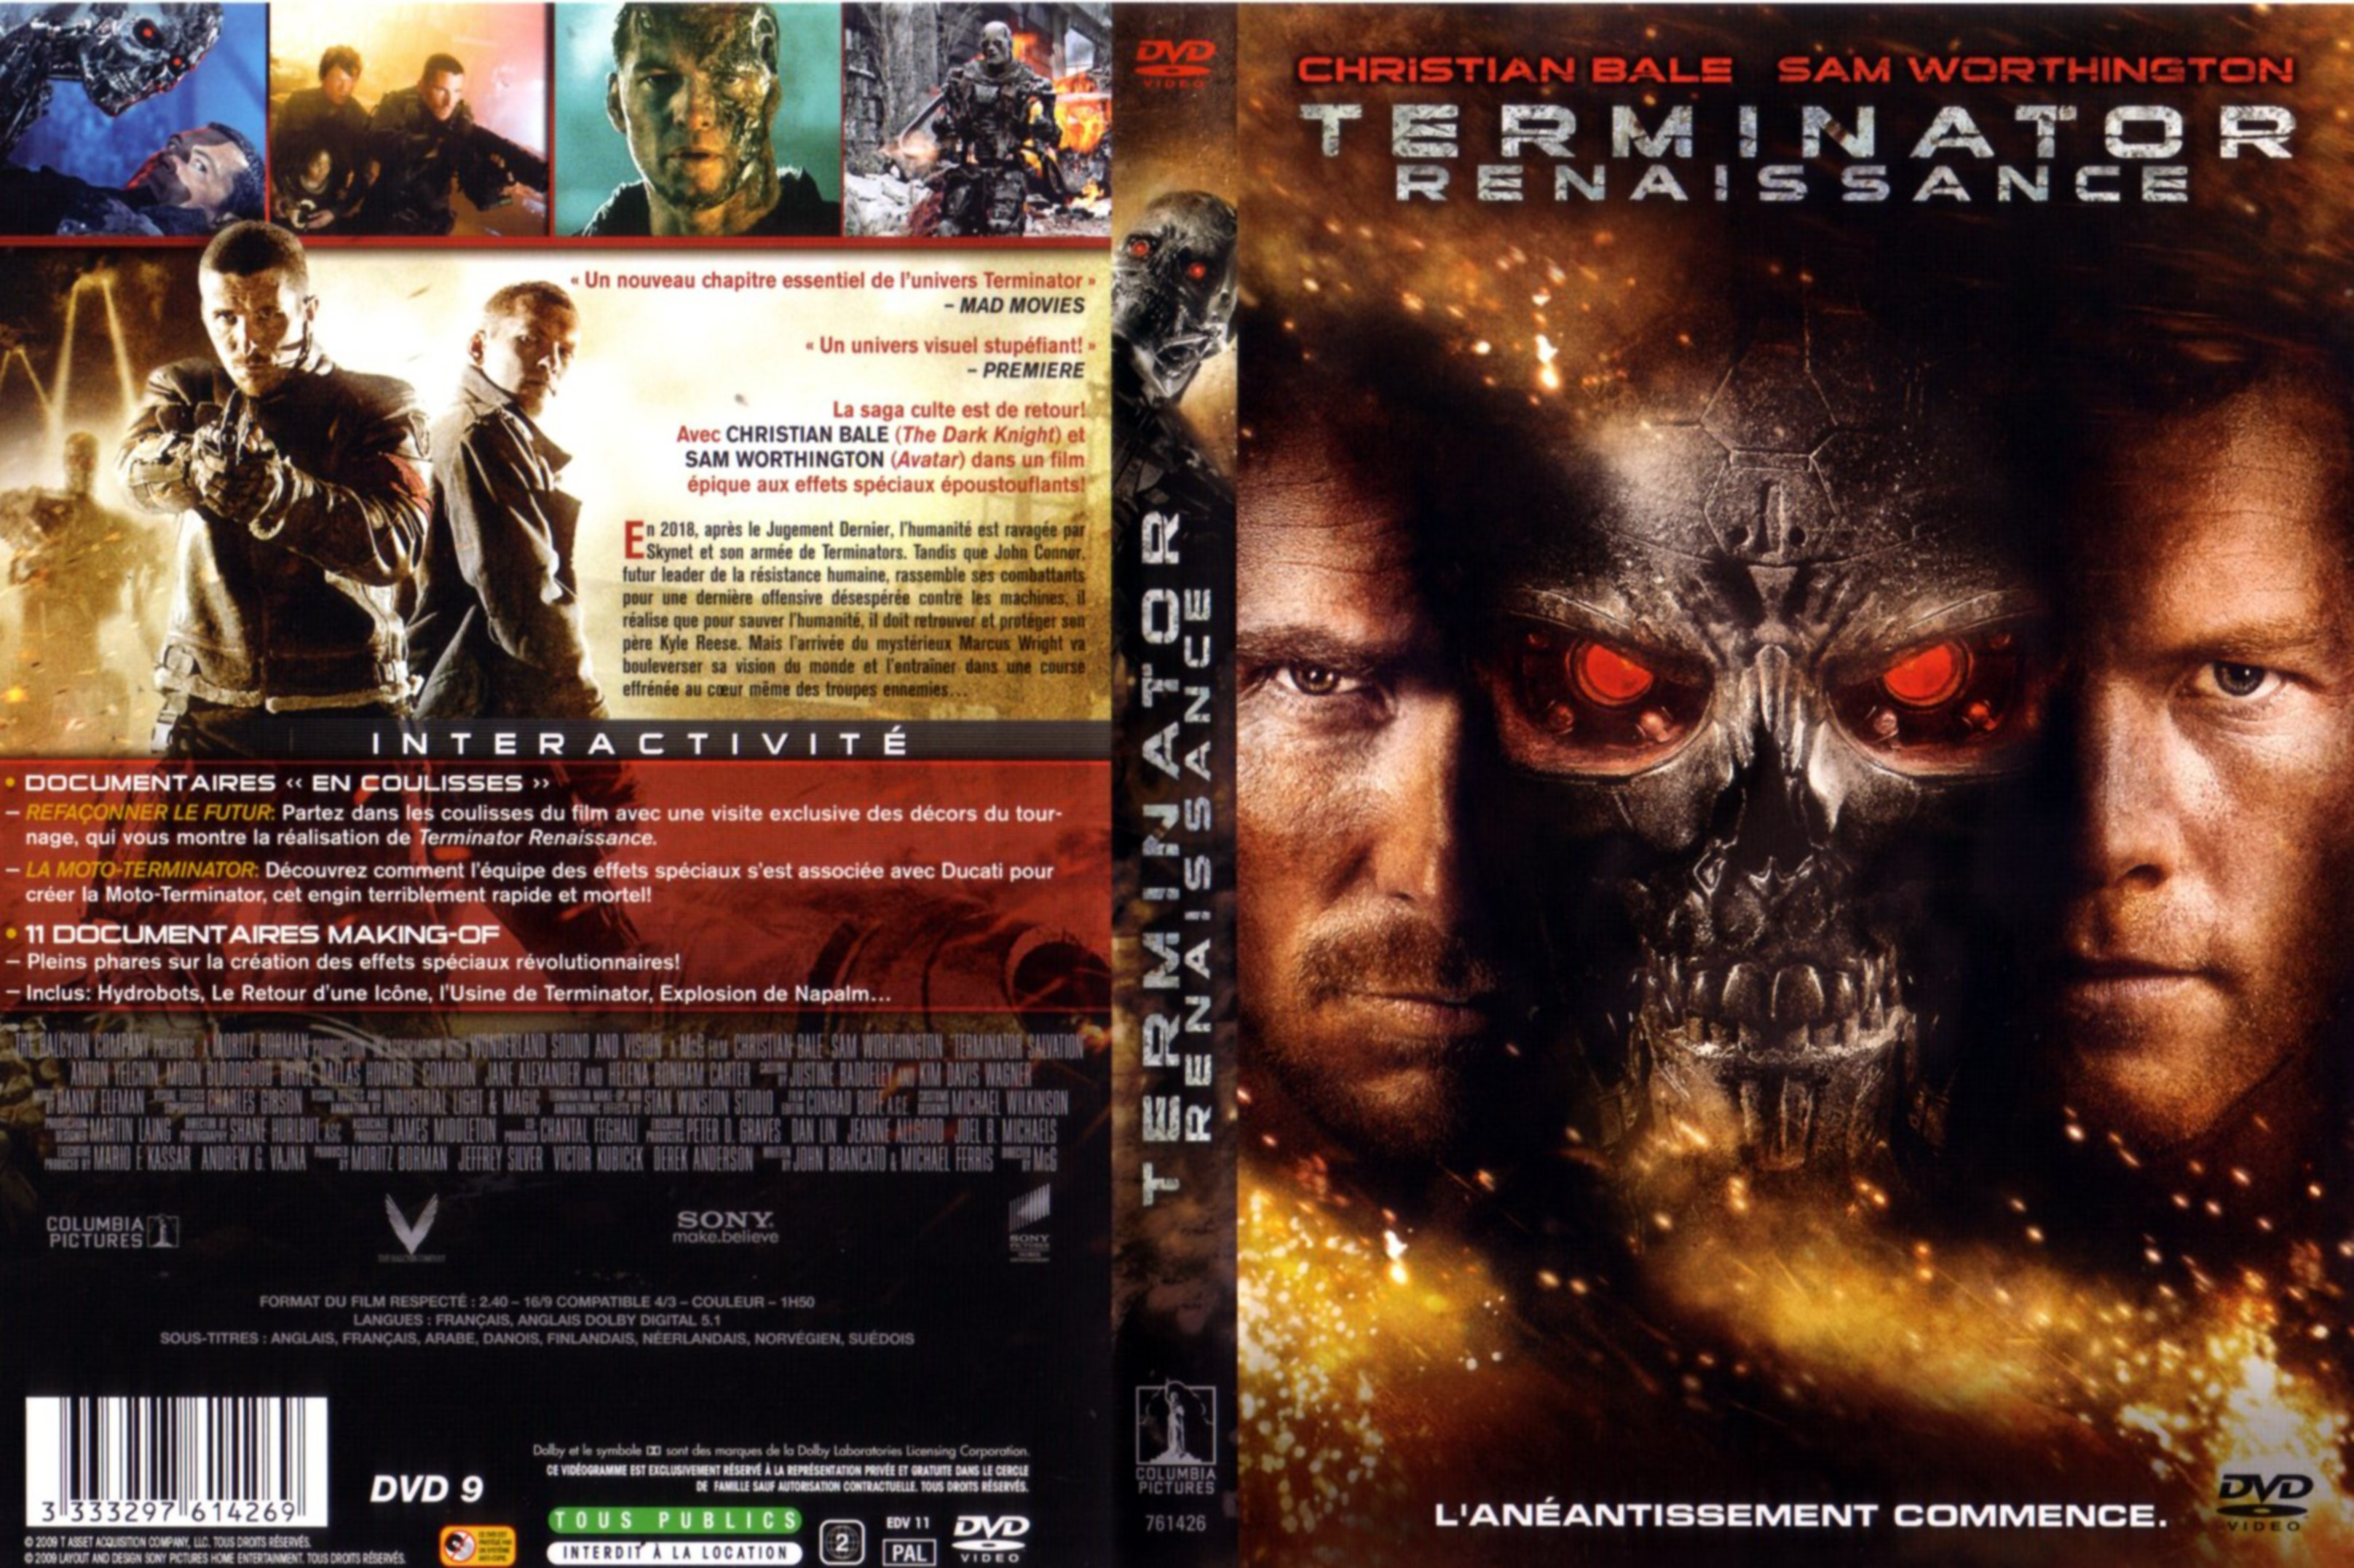 Jaquette DVD Terminator Renaissance